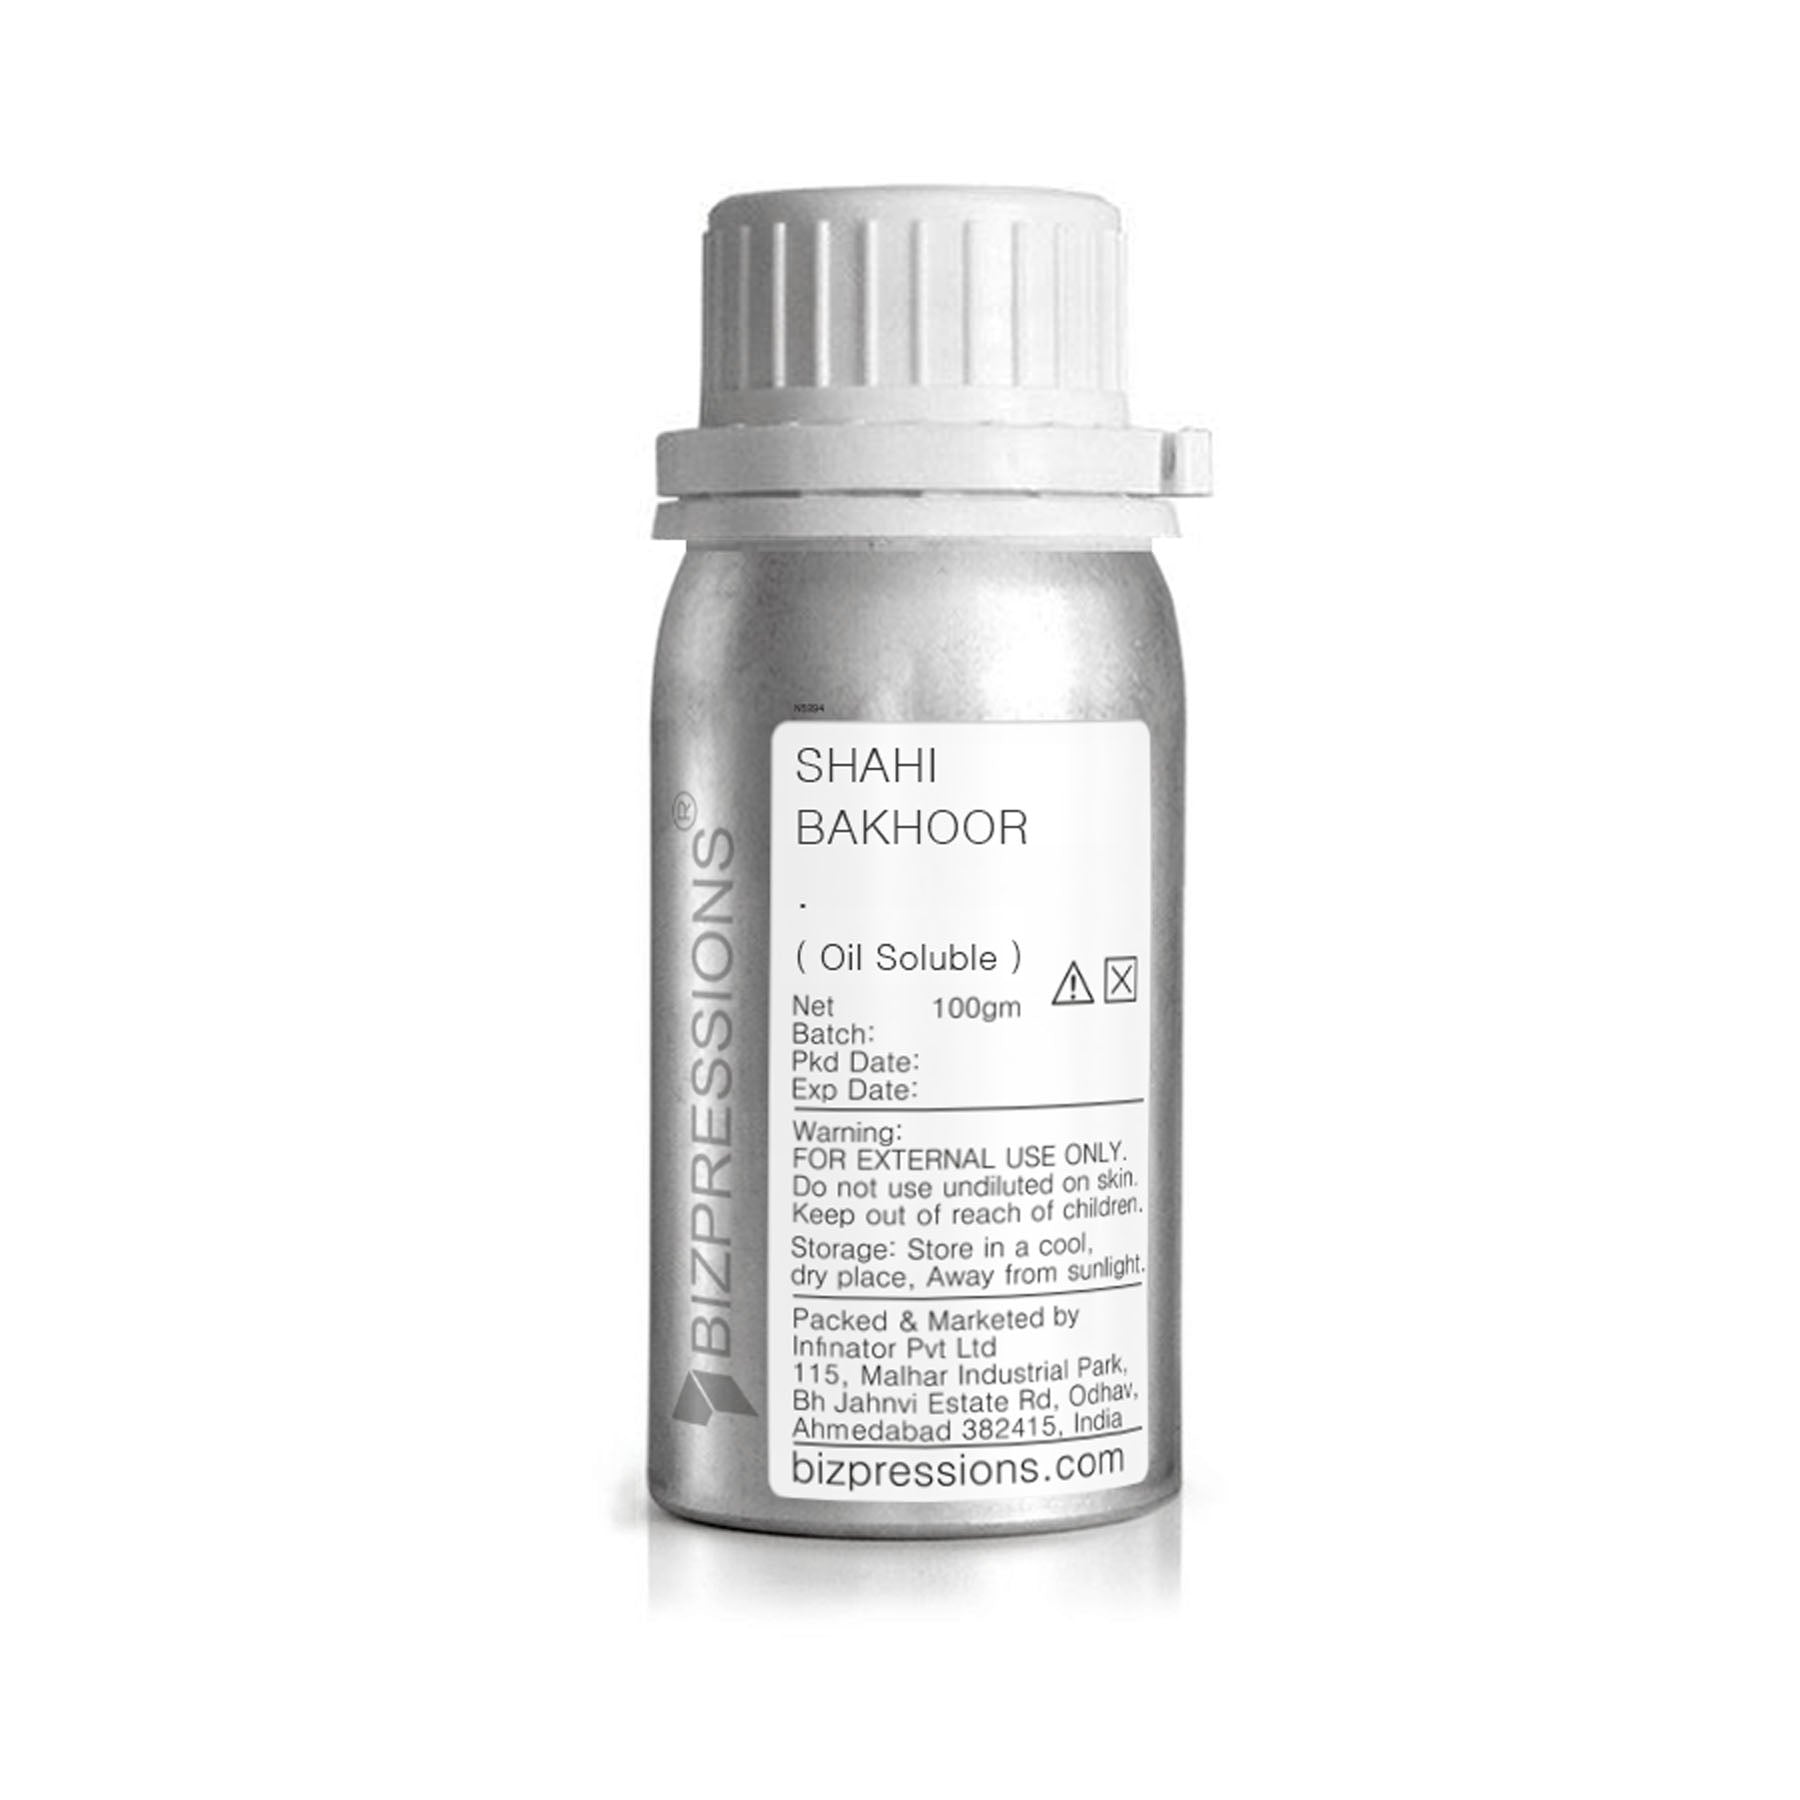 SHAHI BAKHOOR - Fragrance ( Oil Soluble ) - 100 gm